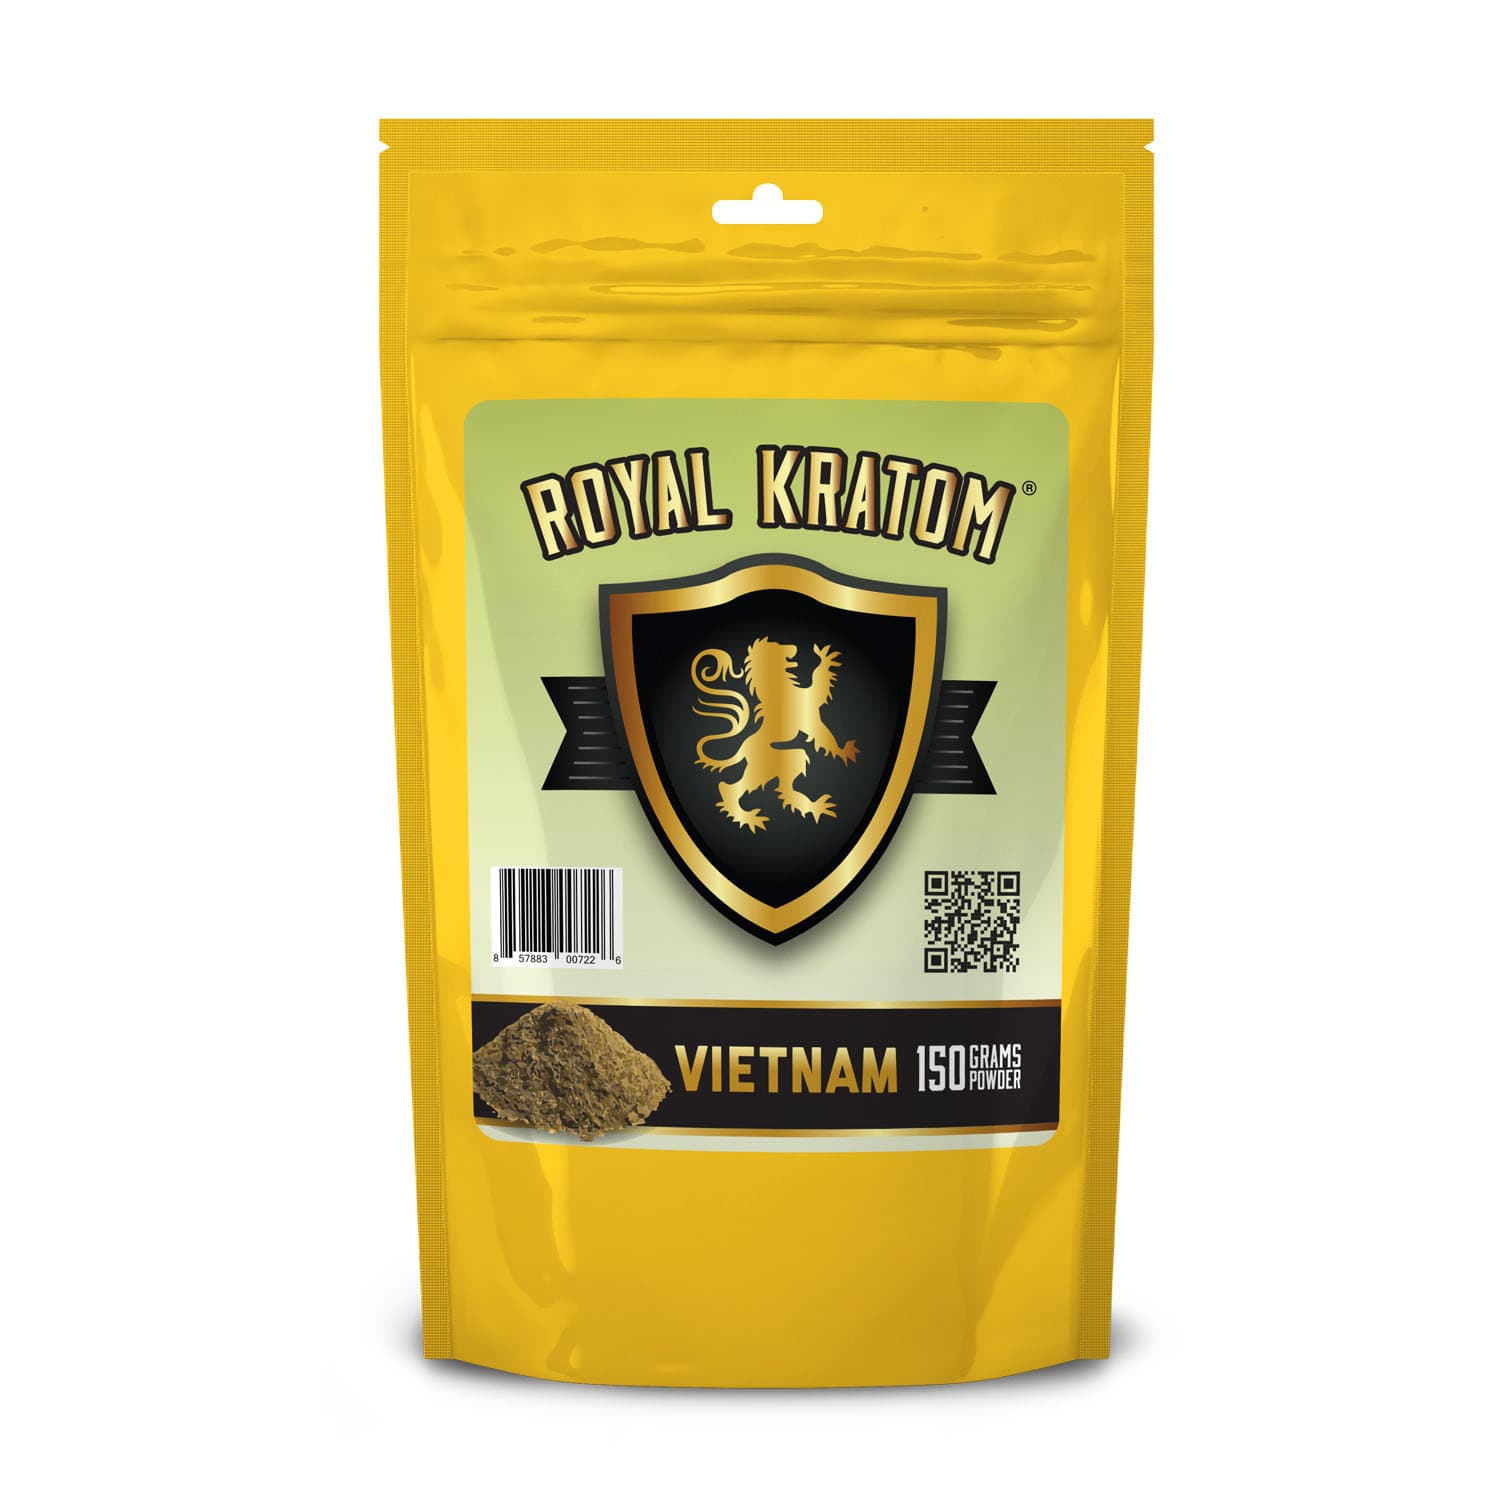 Vietnam Kratom Powder 150 Grams front of package